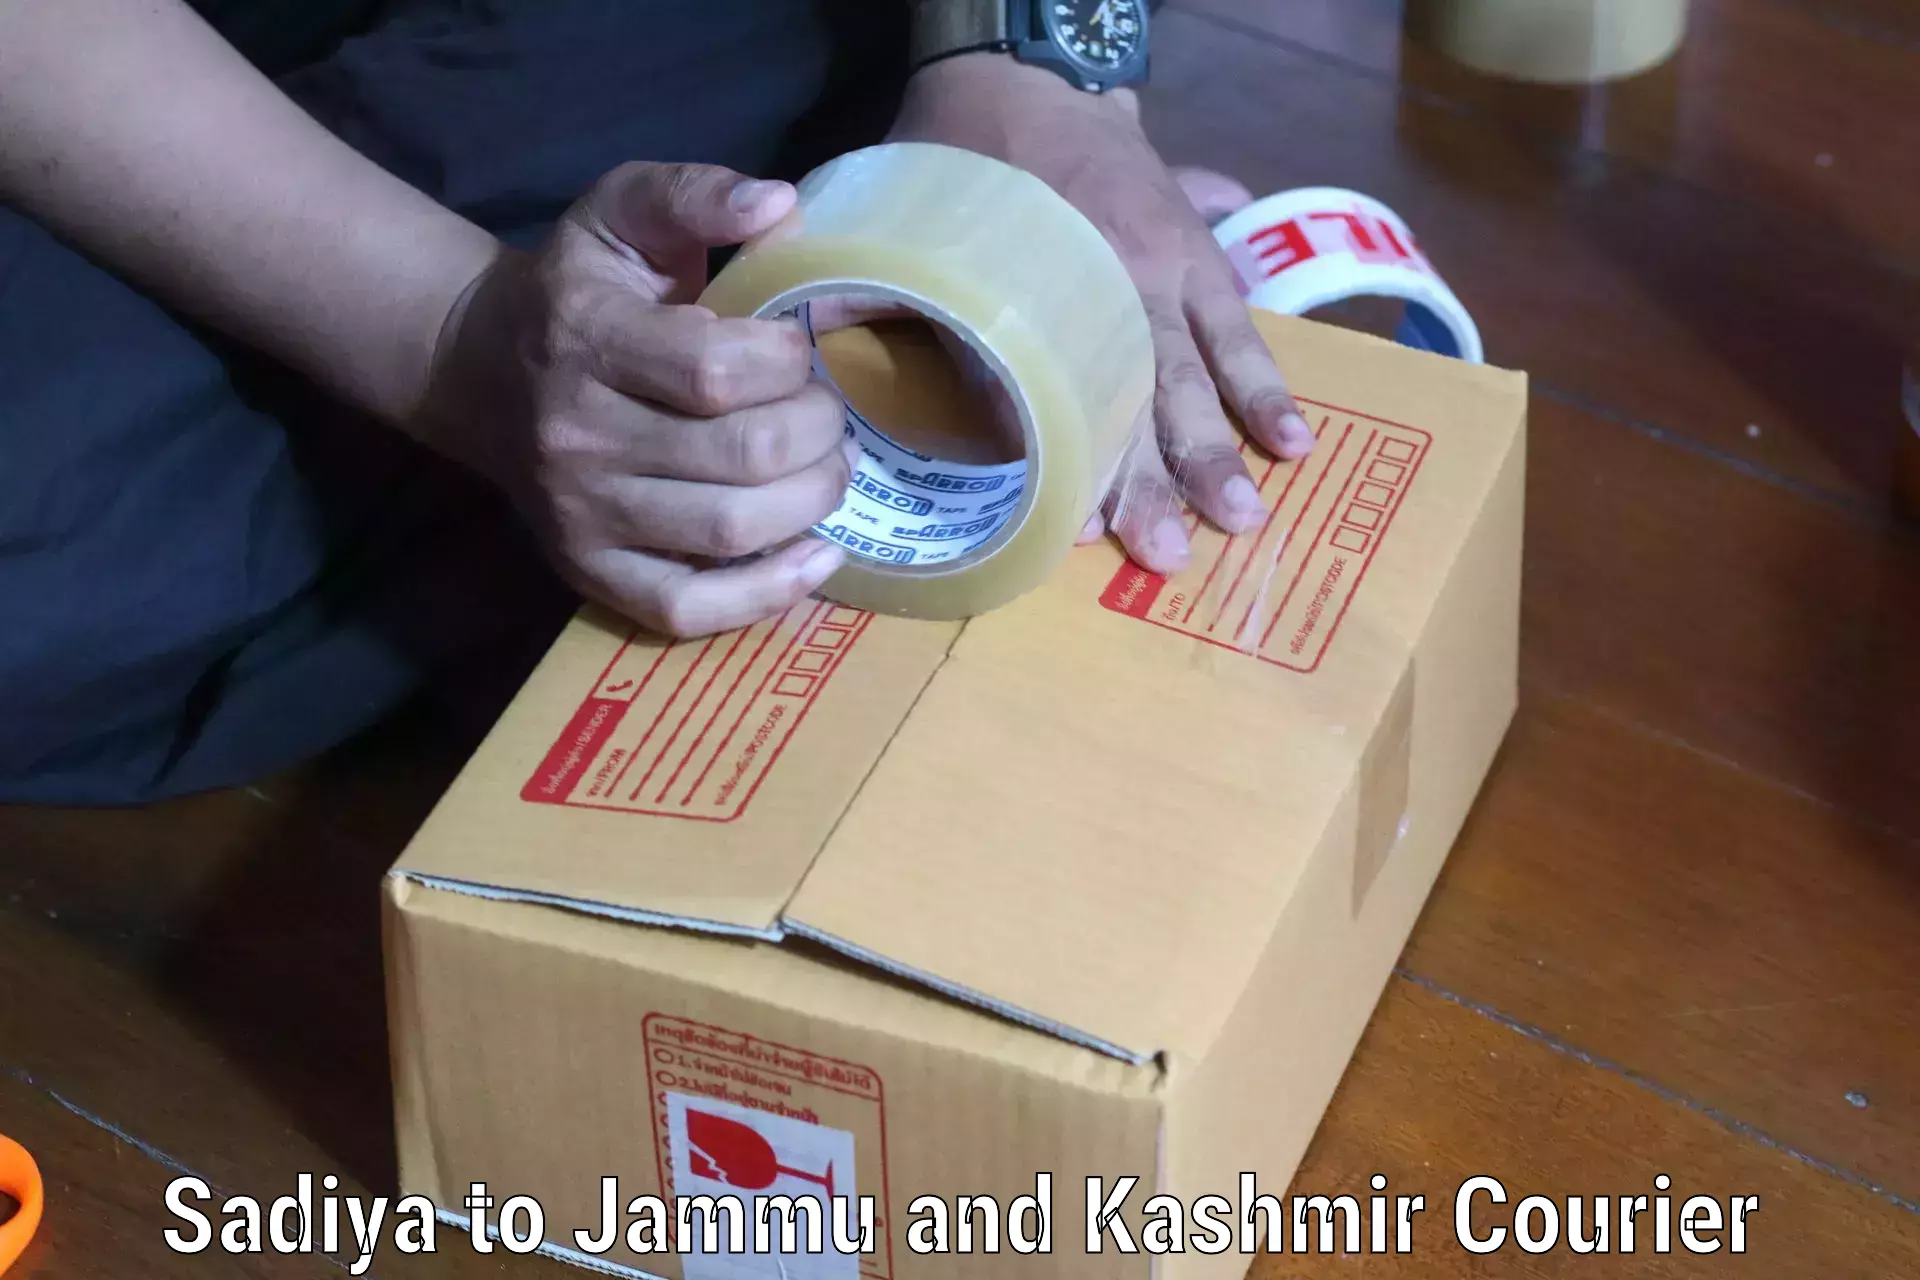 Affordable parcel service Sadiya to Jakh